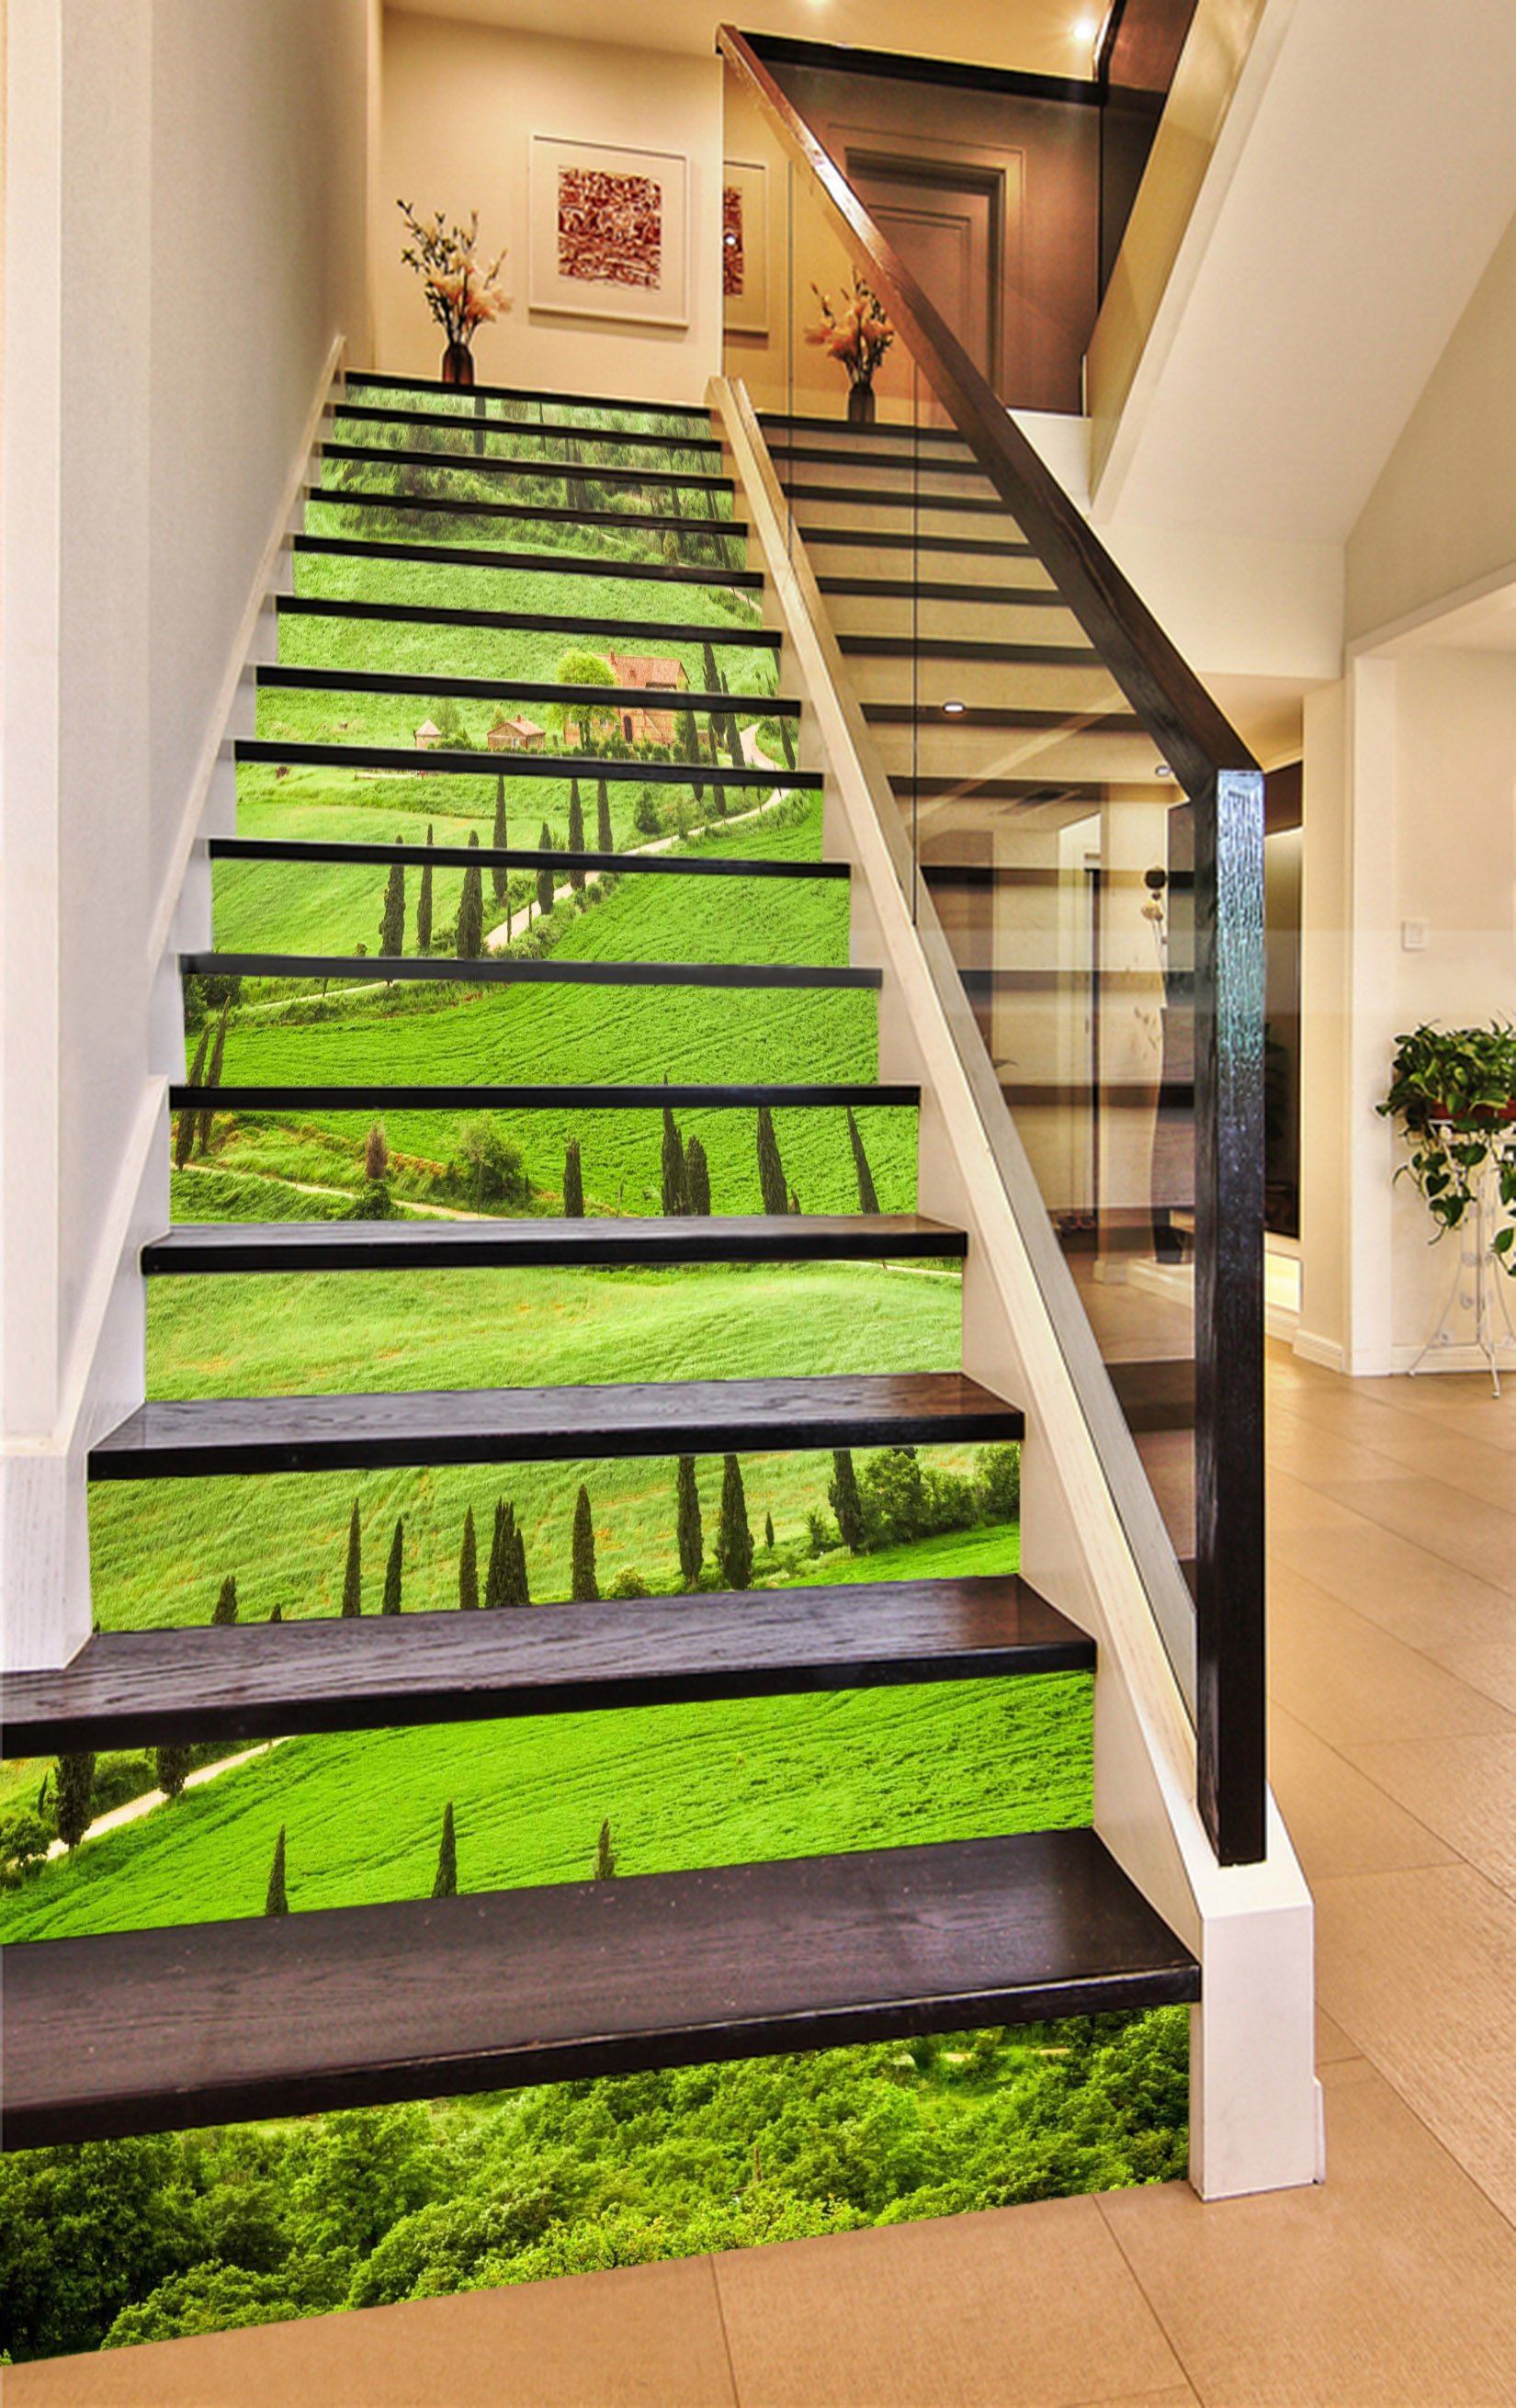 3D Green Grassland 742 Stair Risers Wallpaper AJ Wallpaper 